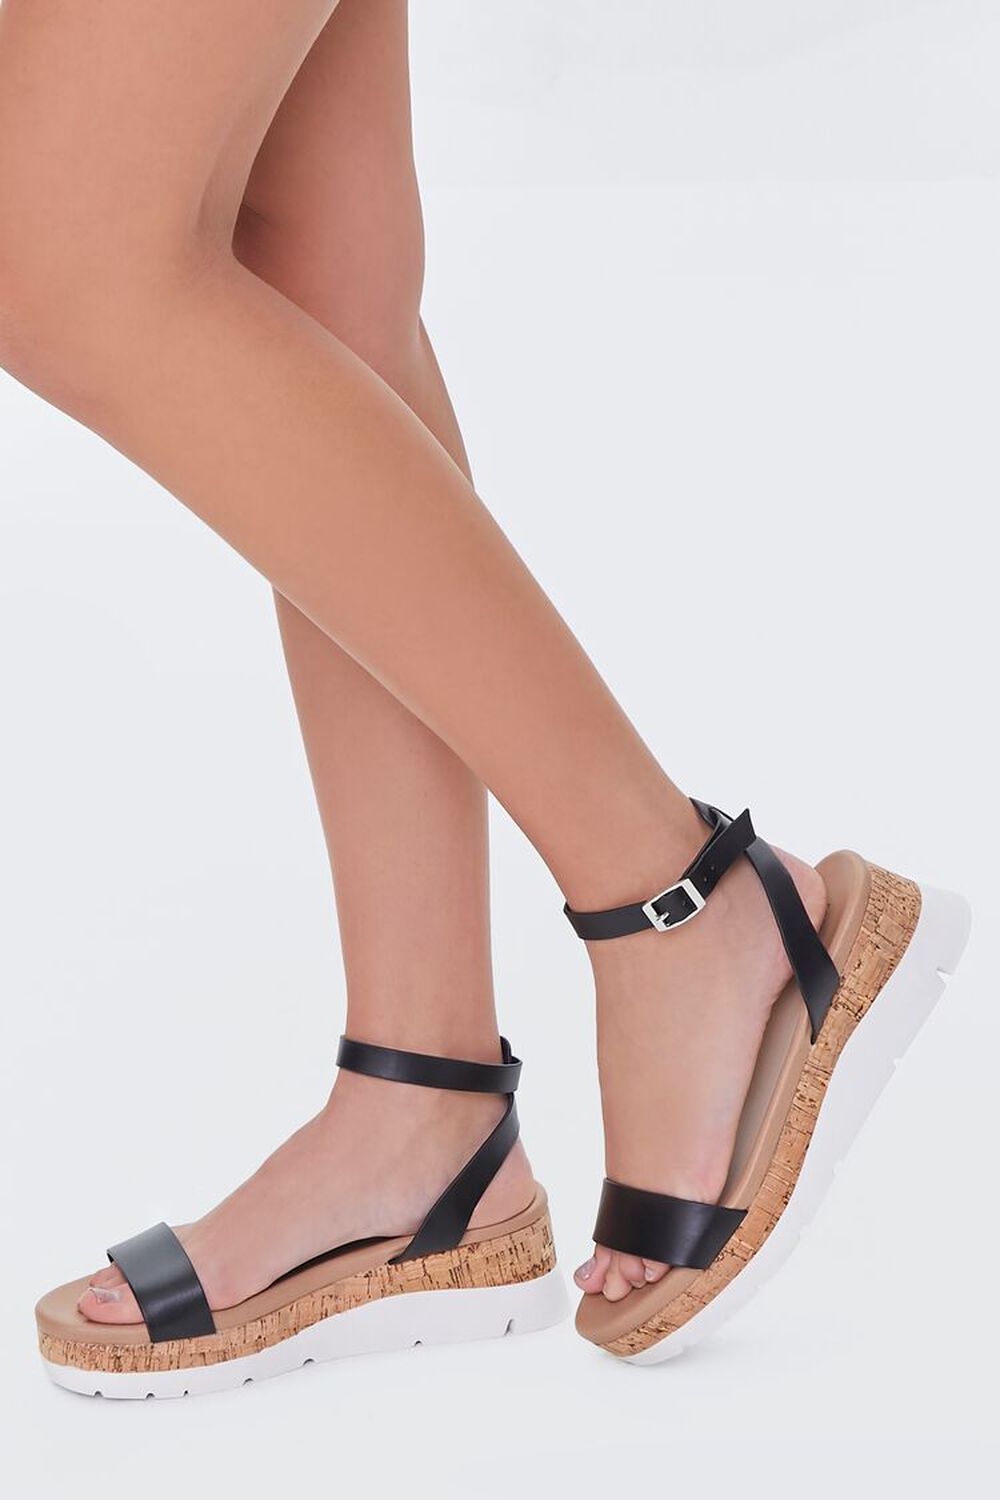 BLACK Cork Ankle-Strap Flatform Sandals, image 1